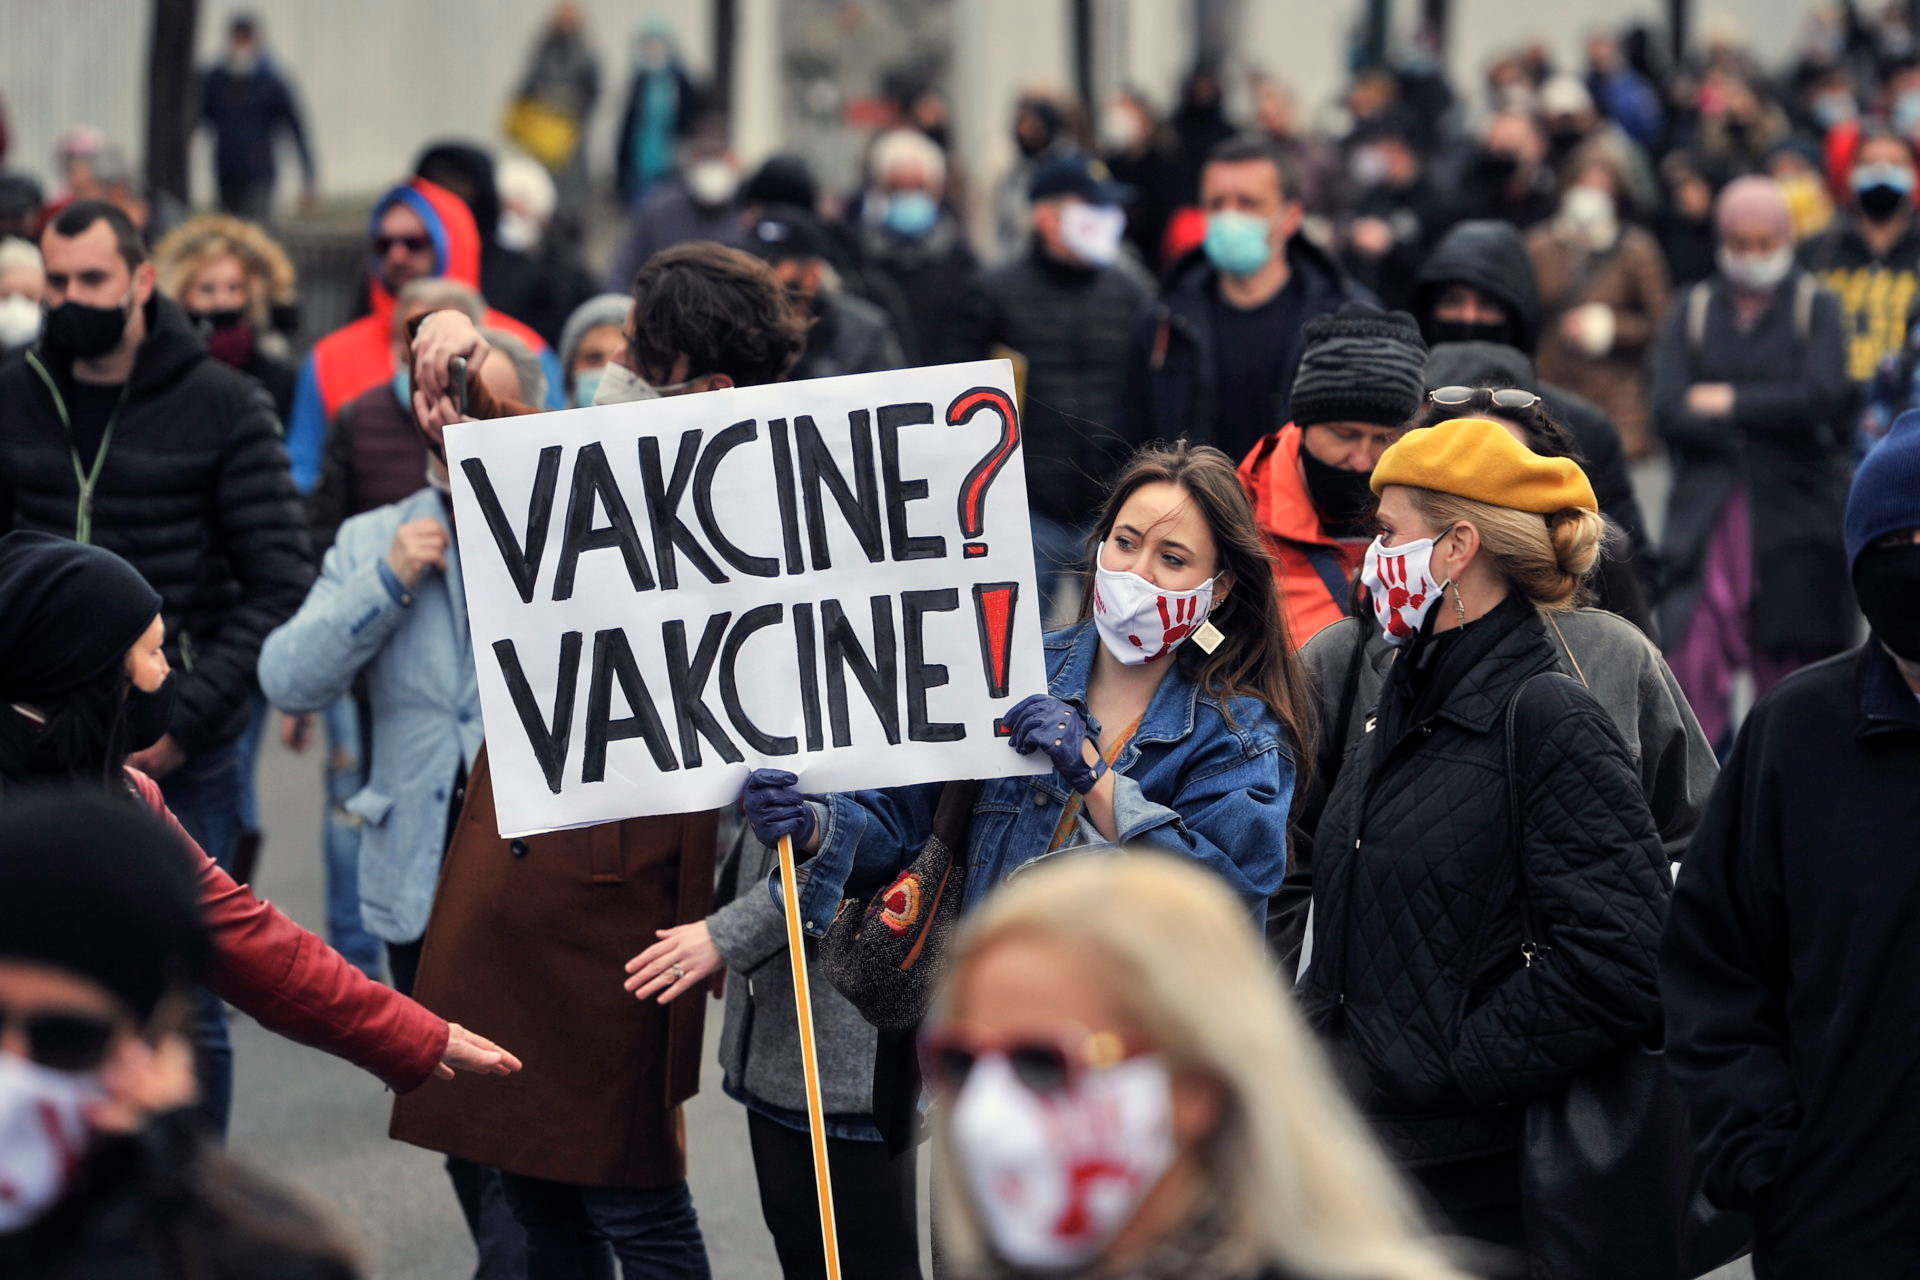 Lassan és kevés vakcinával olt a bosnyák kormány, ezért tüntettek